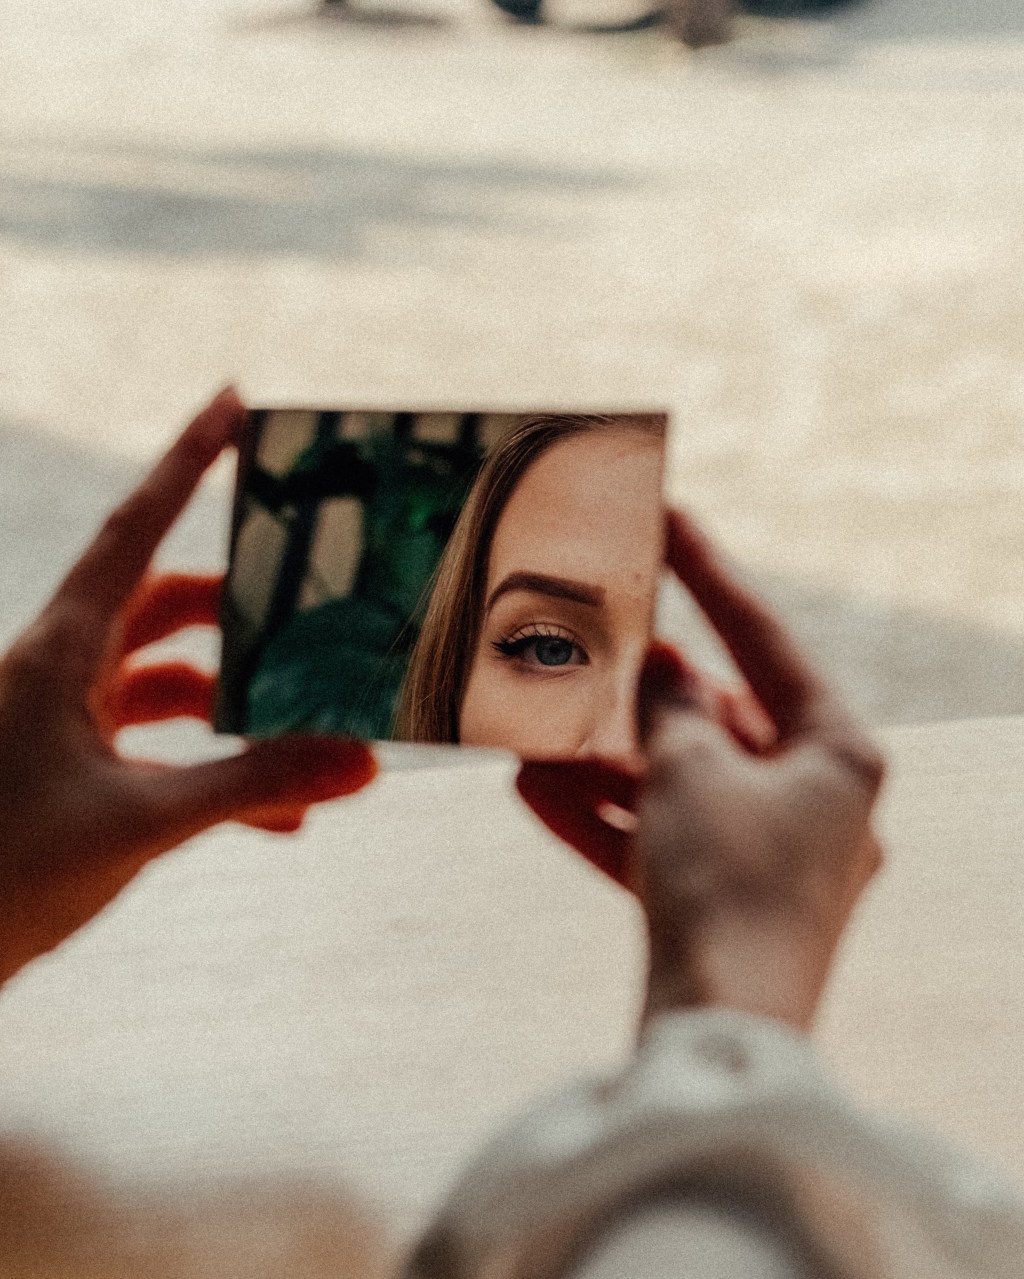 mulher olhando parte de seu reflexo (olho e sobrancelha) por espelho de mão